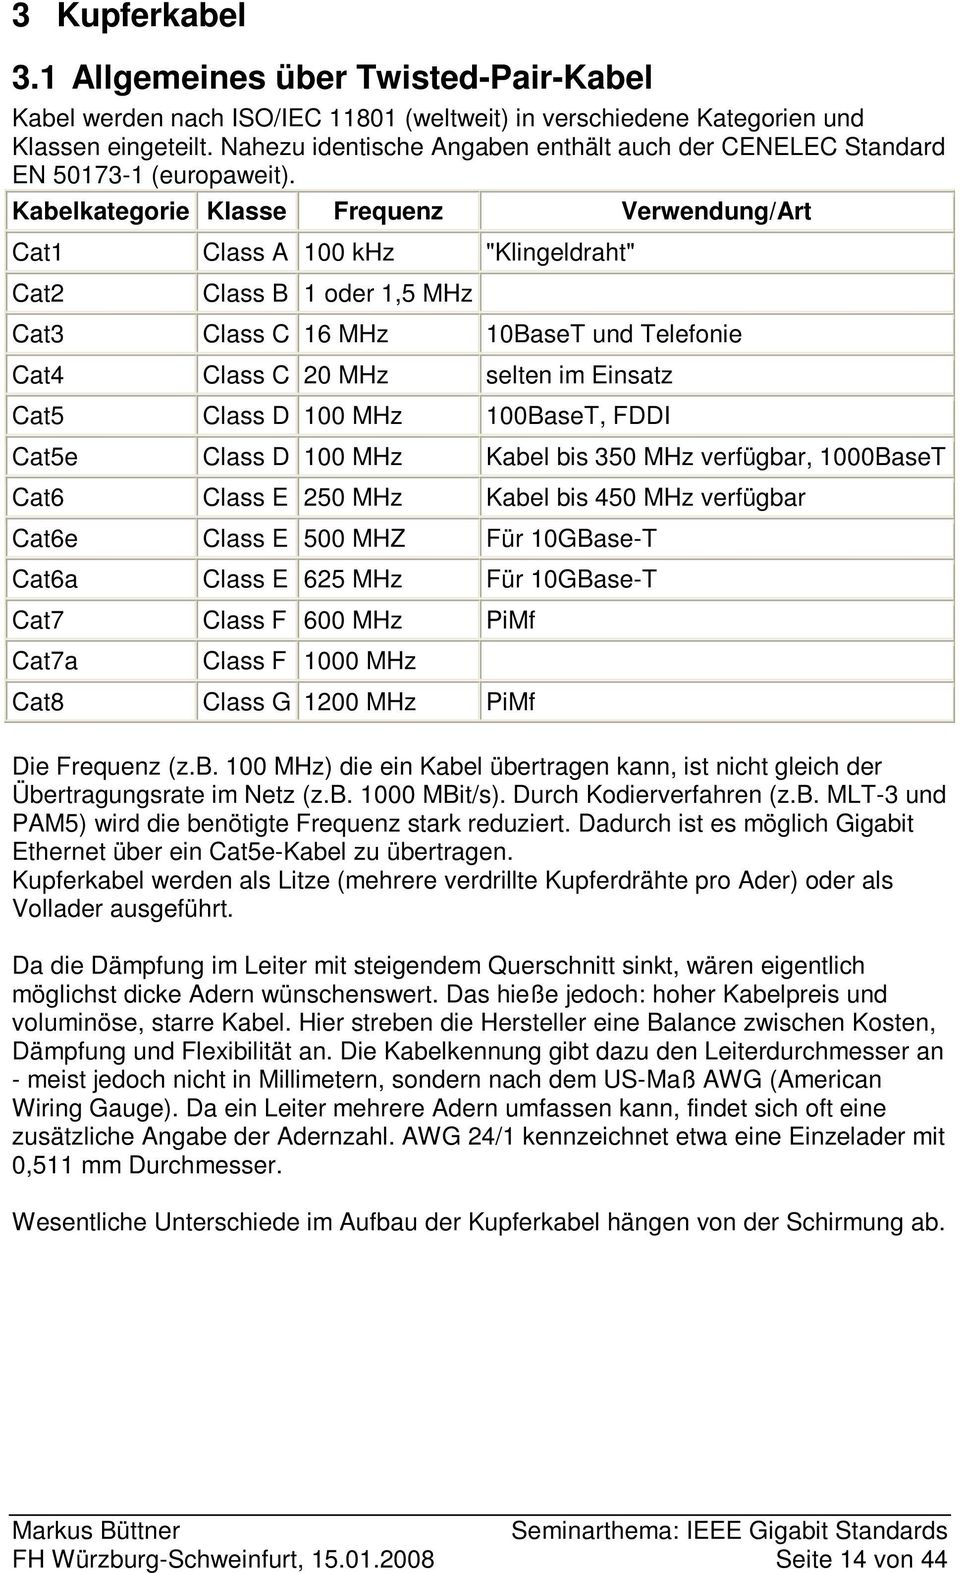 Kabelkategorie Klasse Frequenz Verwendung/Art Cat1 Class A 100 khz "Klingeldraht" Cat2 Class B 1 oder 1,5 MHz Cat3 Class C 16 MHz 10BaseT und Telefonie Cat4 Class C 20 MHz selten im Einsatz Cat5